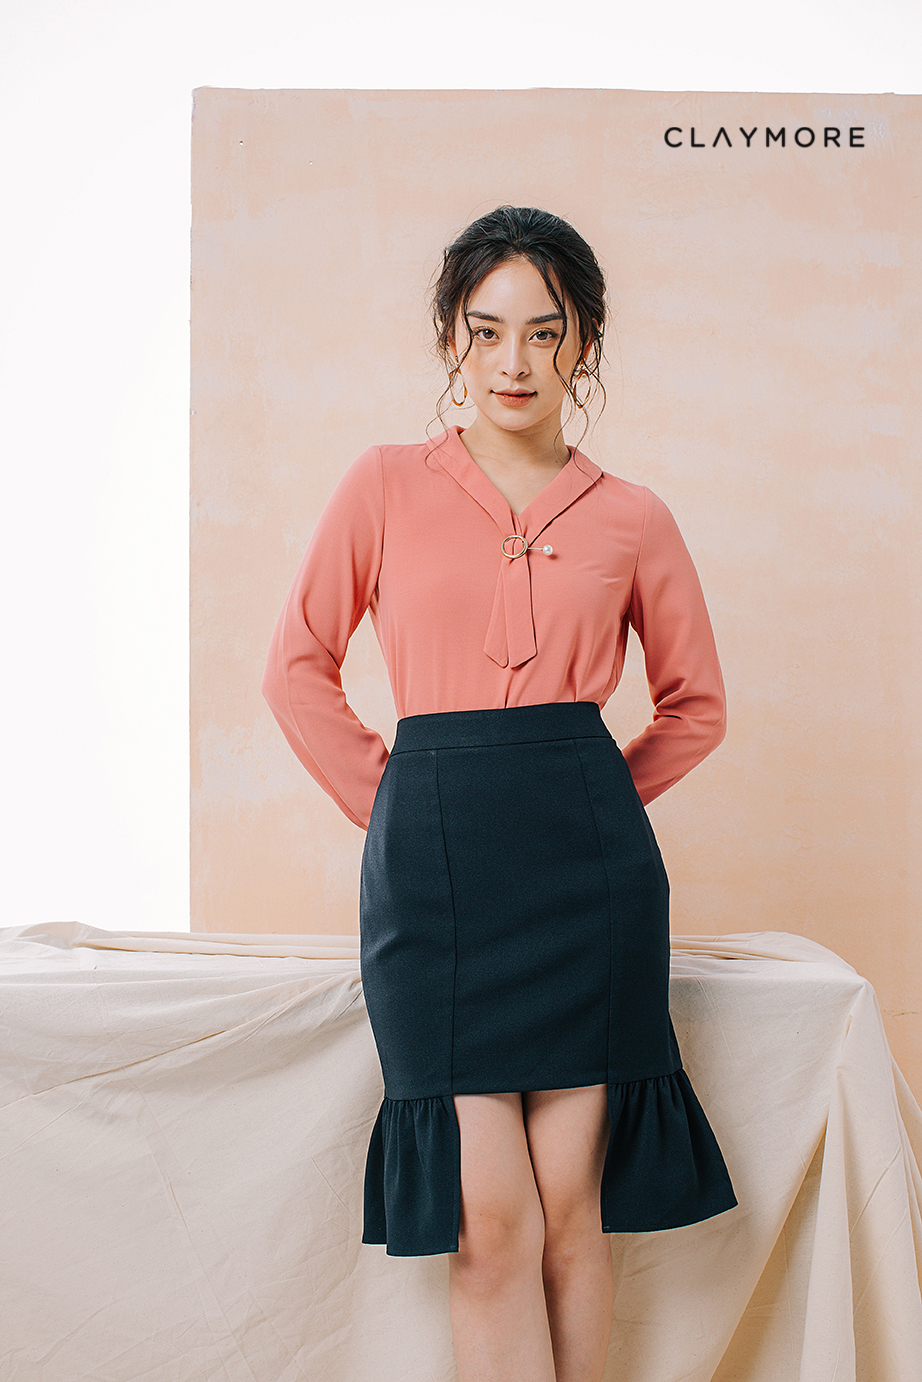 Chân váy công sở nữ GNT3 - dễ phối các loại áo sơ mi áo kiểu đi làm - đơn  giản nhưng đẹp và thời trang - Chân váy bút chì | ThờiTrangNữ.vn